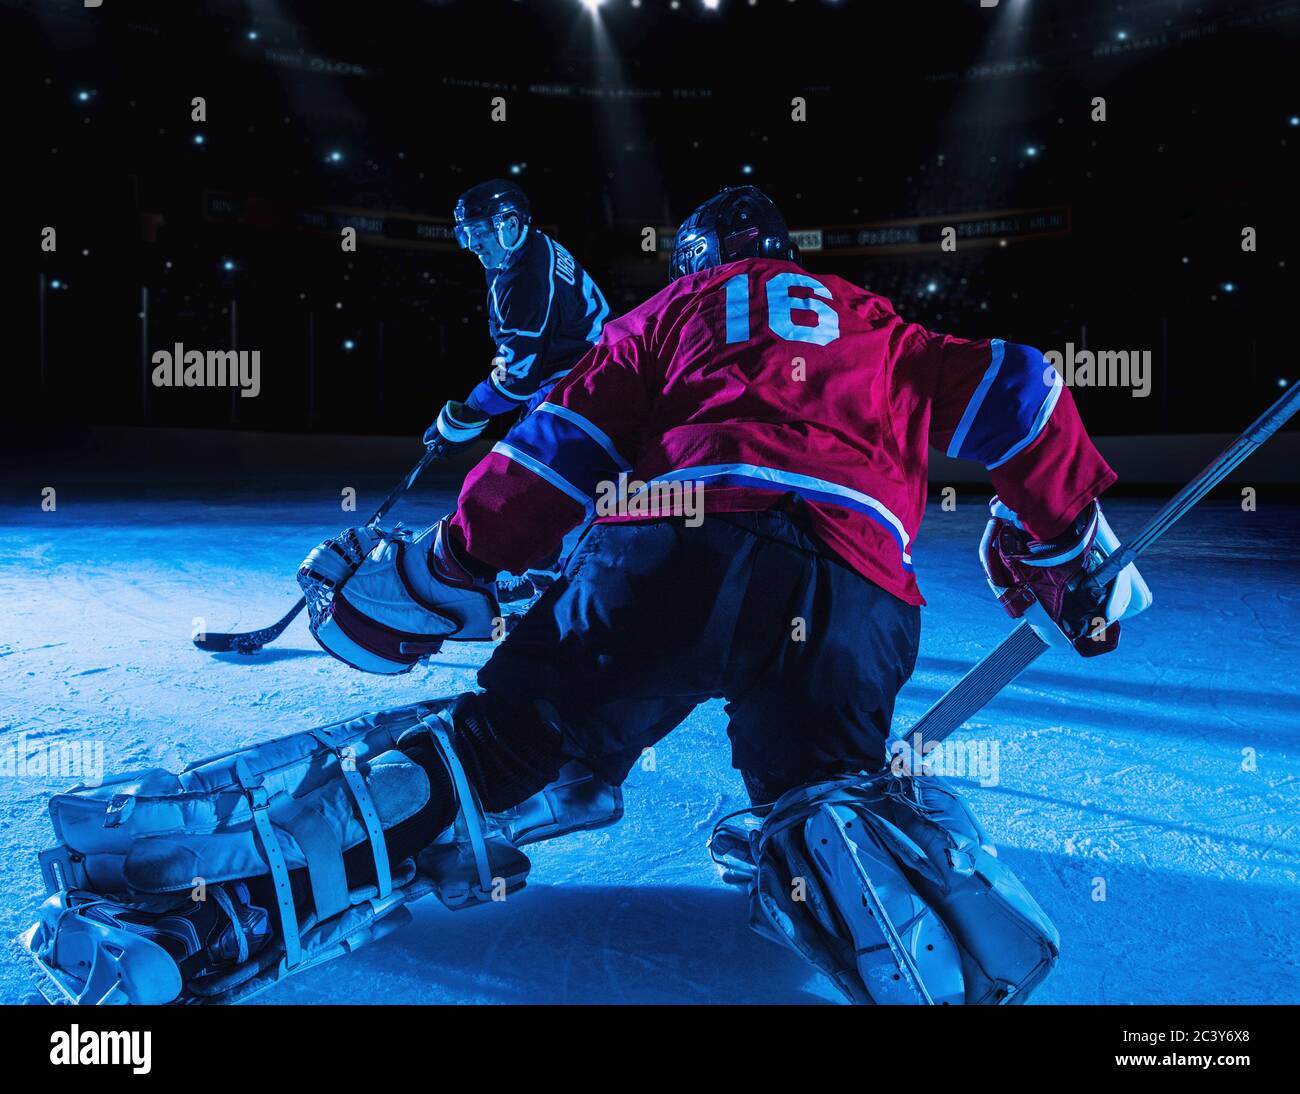 Gardien de but de hockey en position défensive contre l'avant Banque D'Images